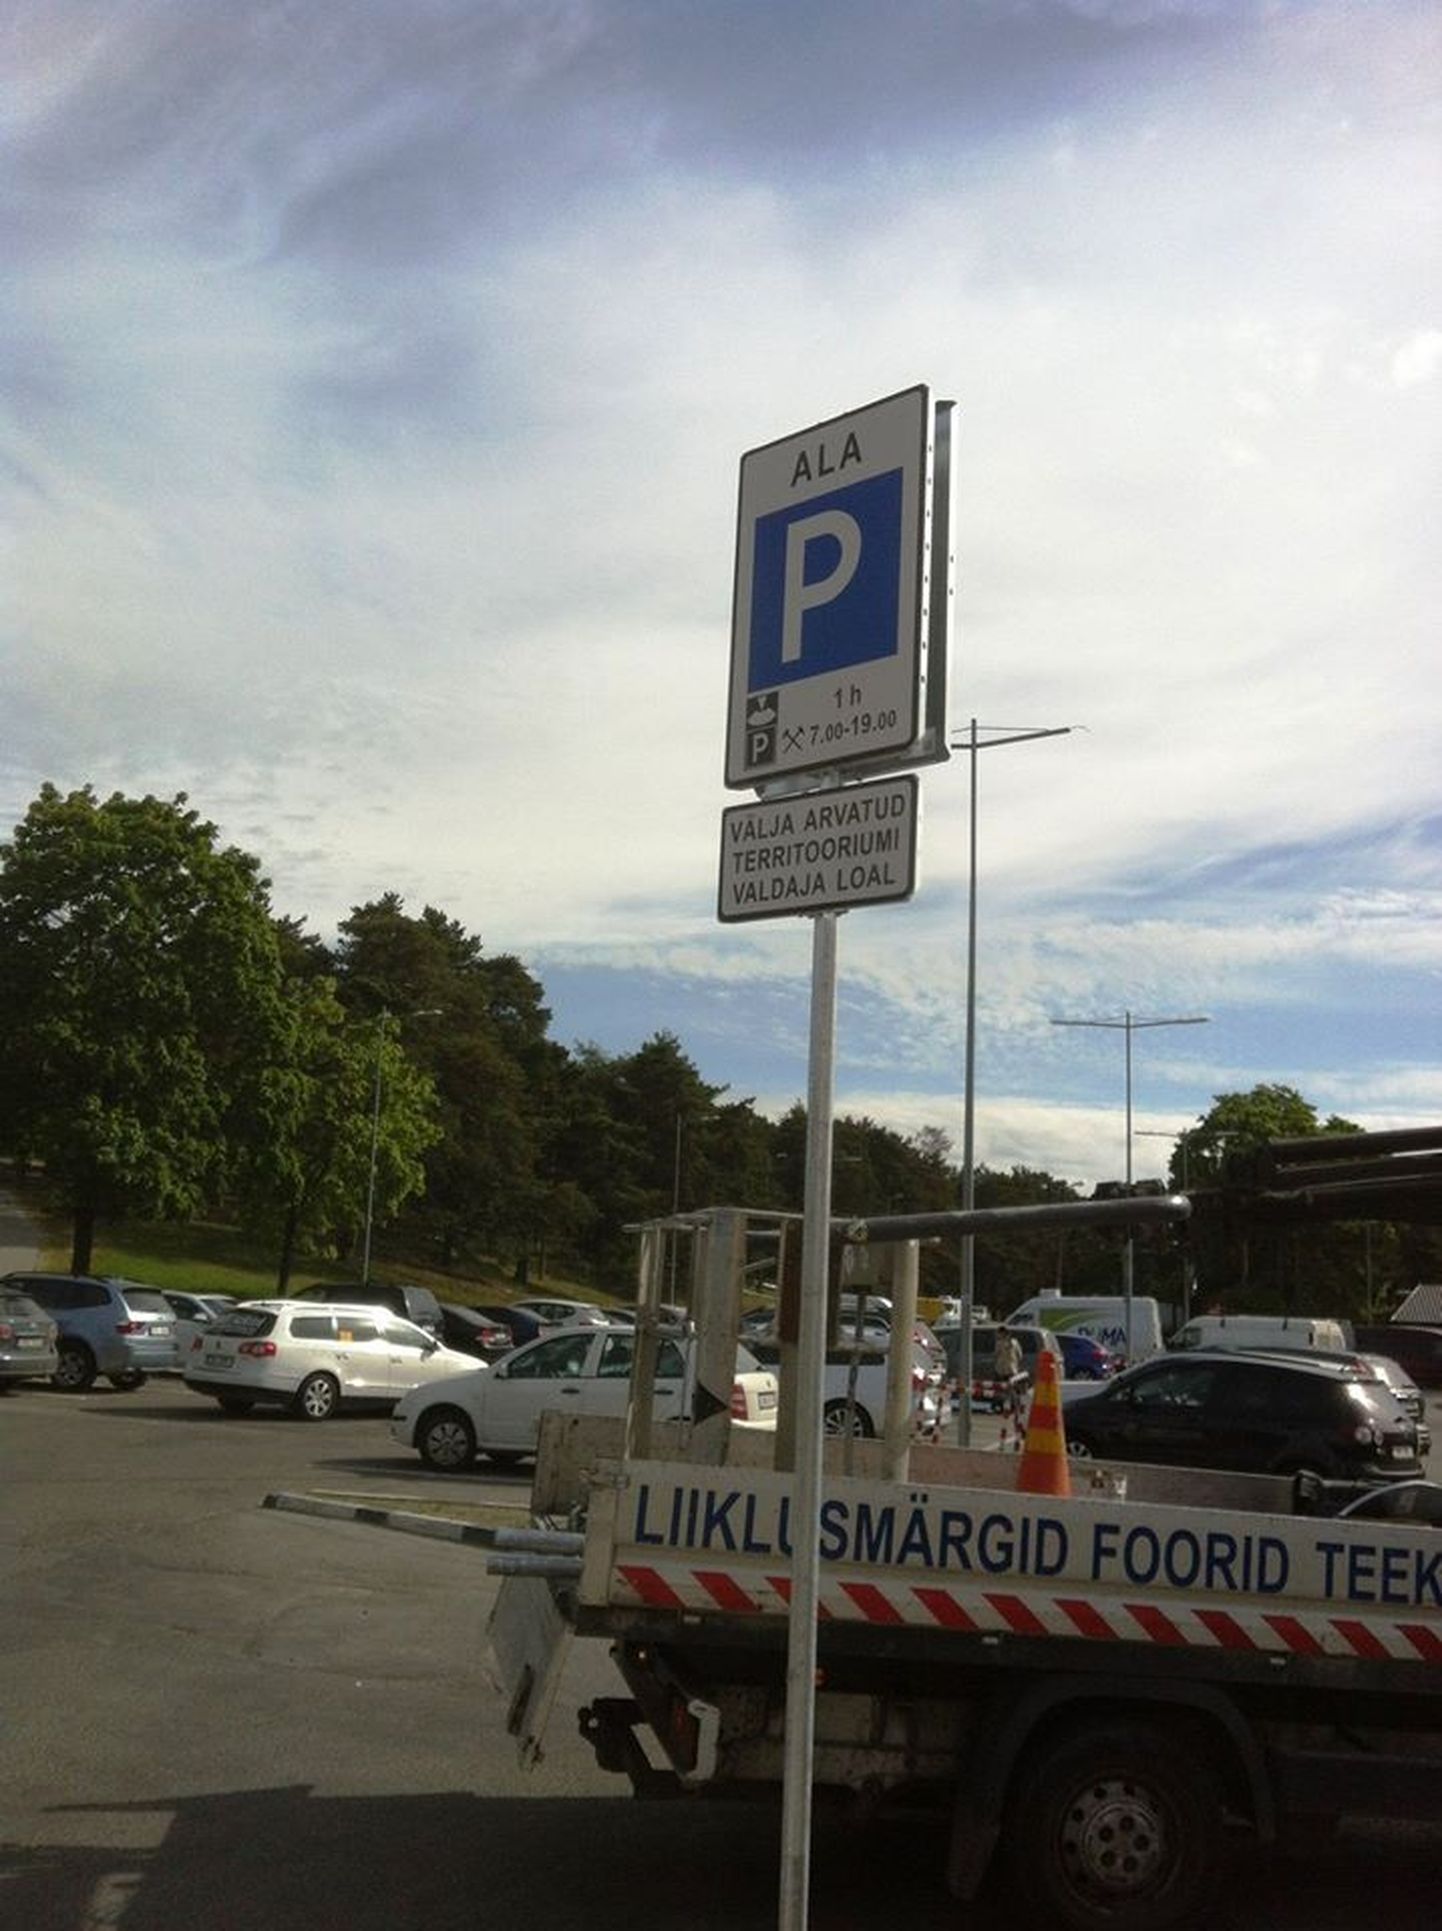 Sellest nädalt tohib Nõmme turu parklas parkida tund aega ning parkimisaja algus tuleb fikseerida parkimiskellaga.